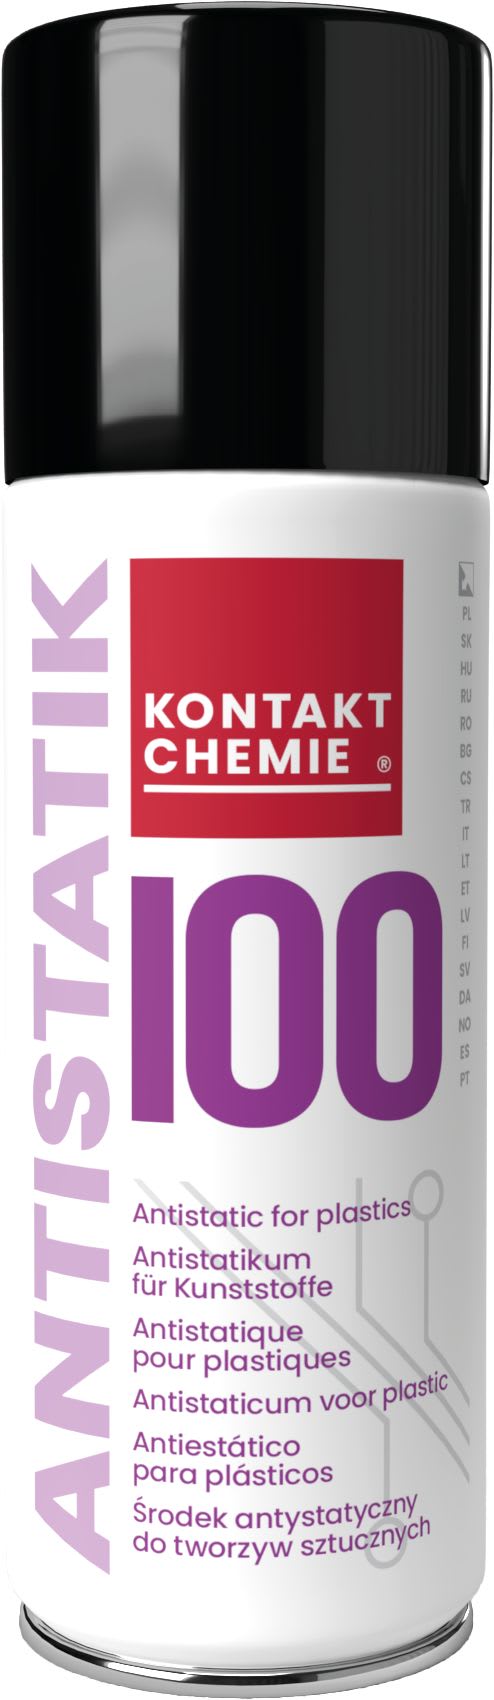 Kf - ANTISTATIK 100 2X5 L